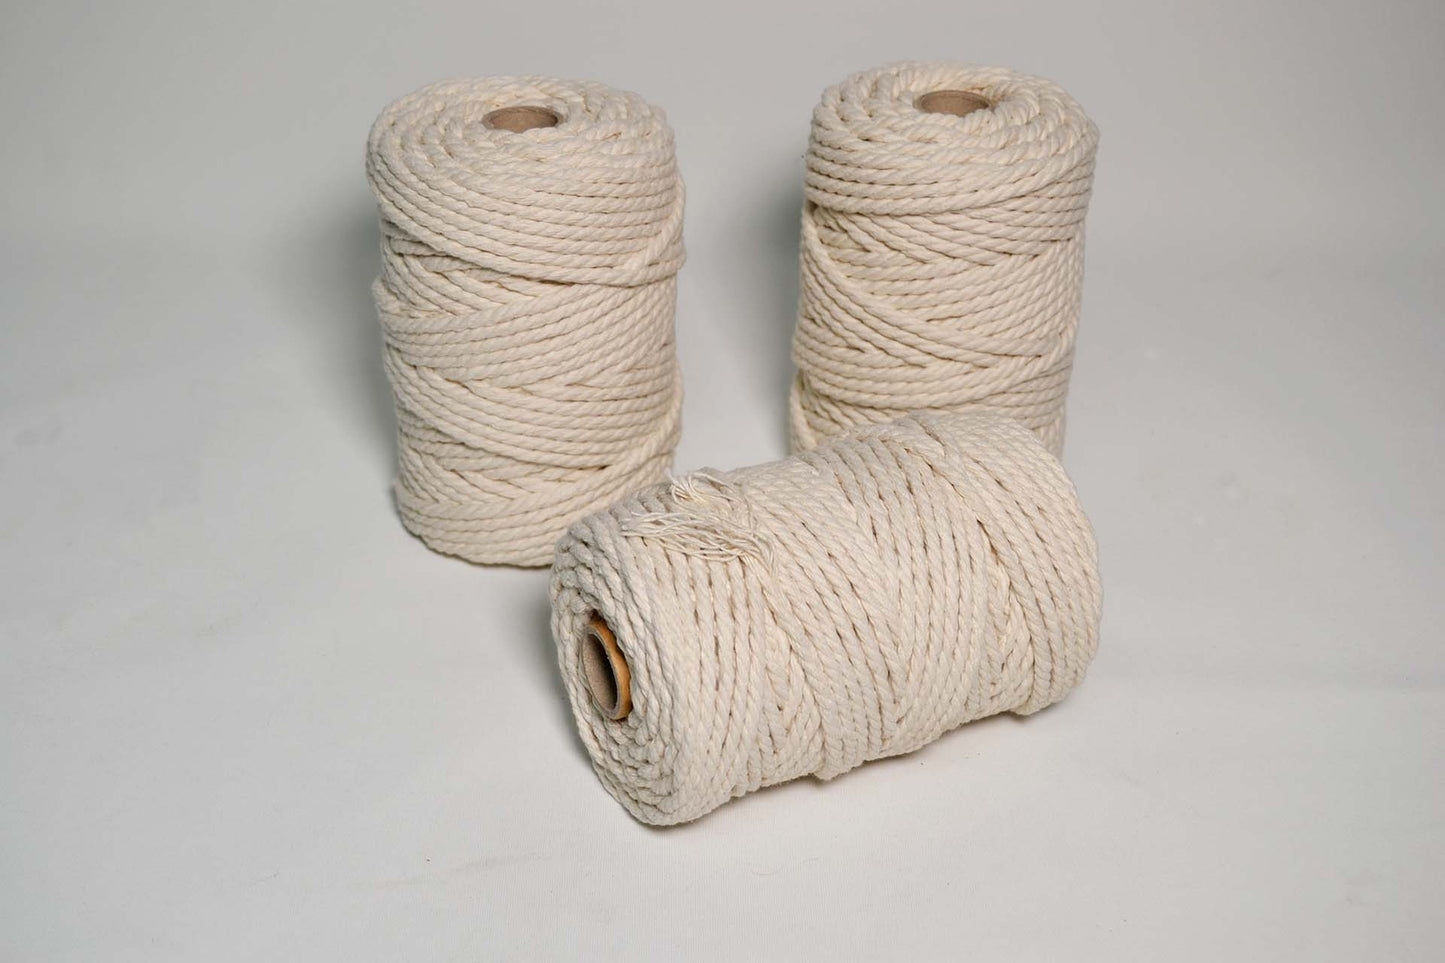 Cuerda de algodón para macrame 3mm